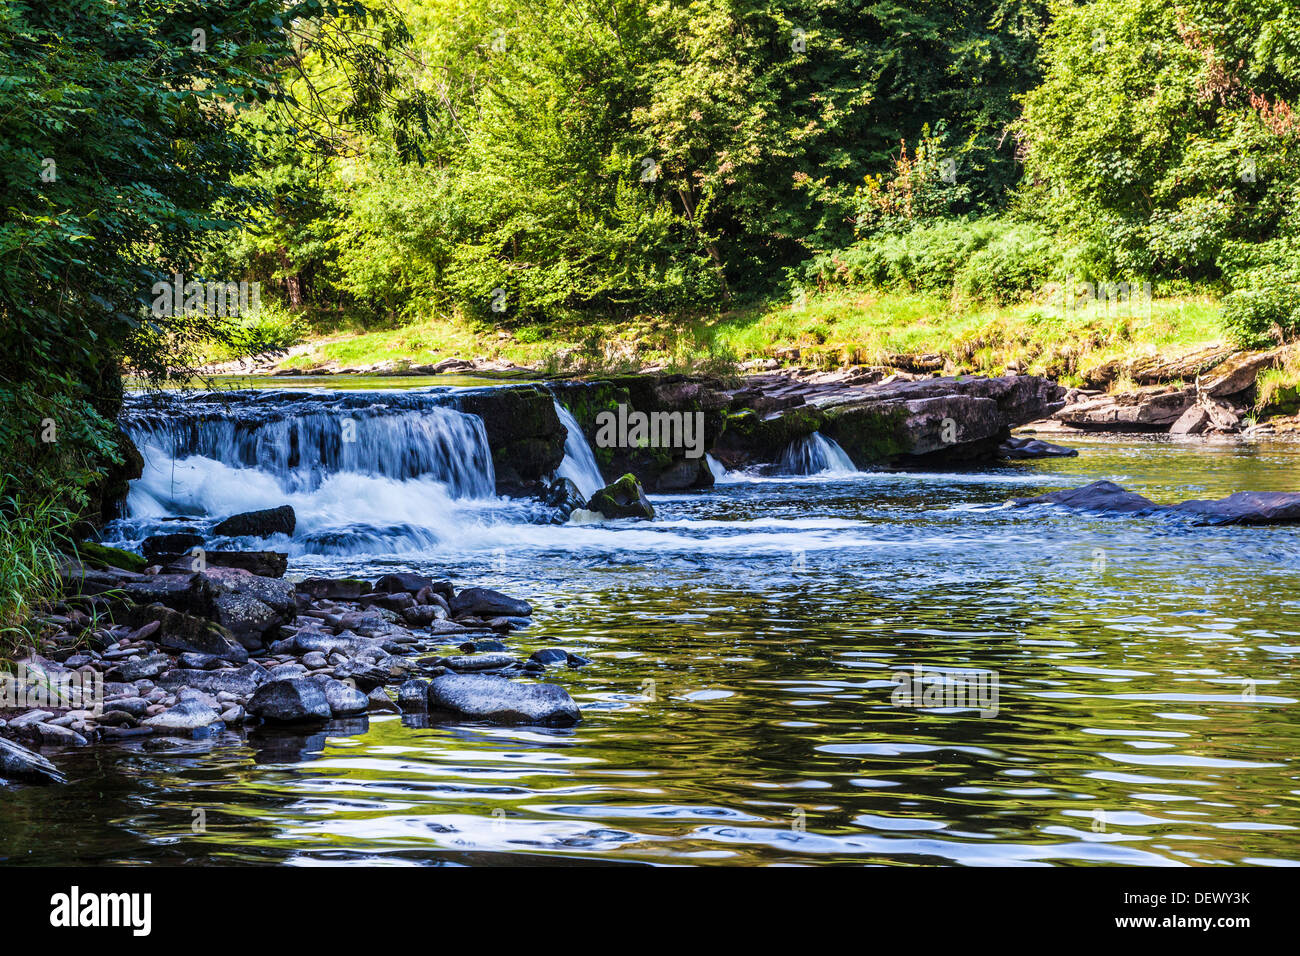 La rivière Usk près de Llangynidr dans le parc national de Brecon Beacons, le Pays de Galles. Banque D'Images